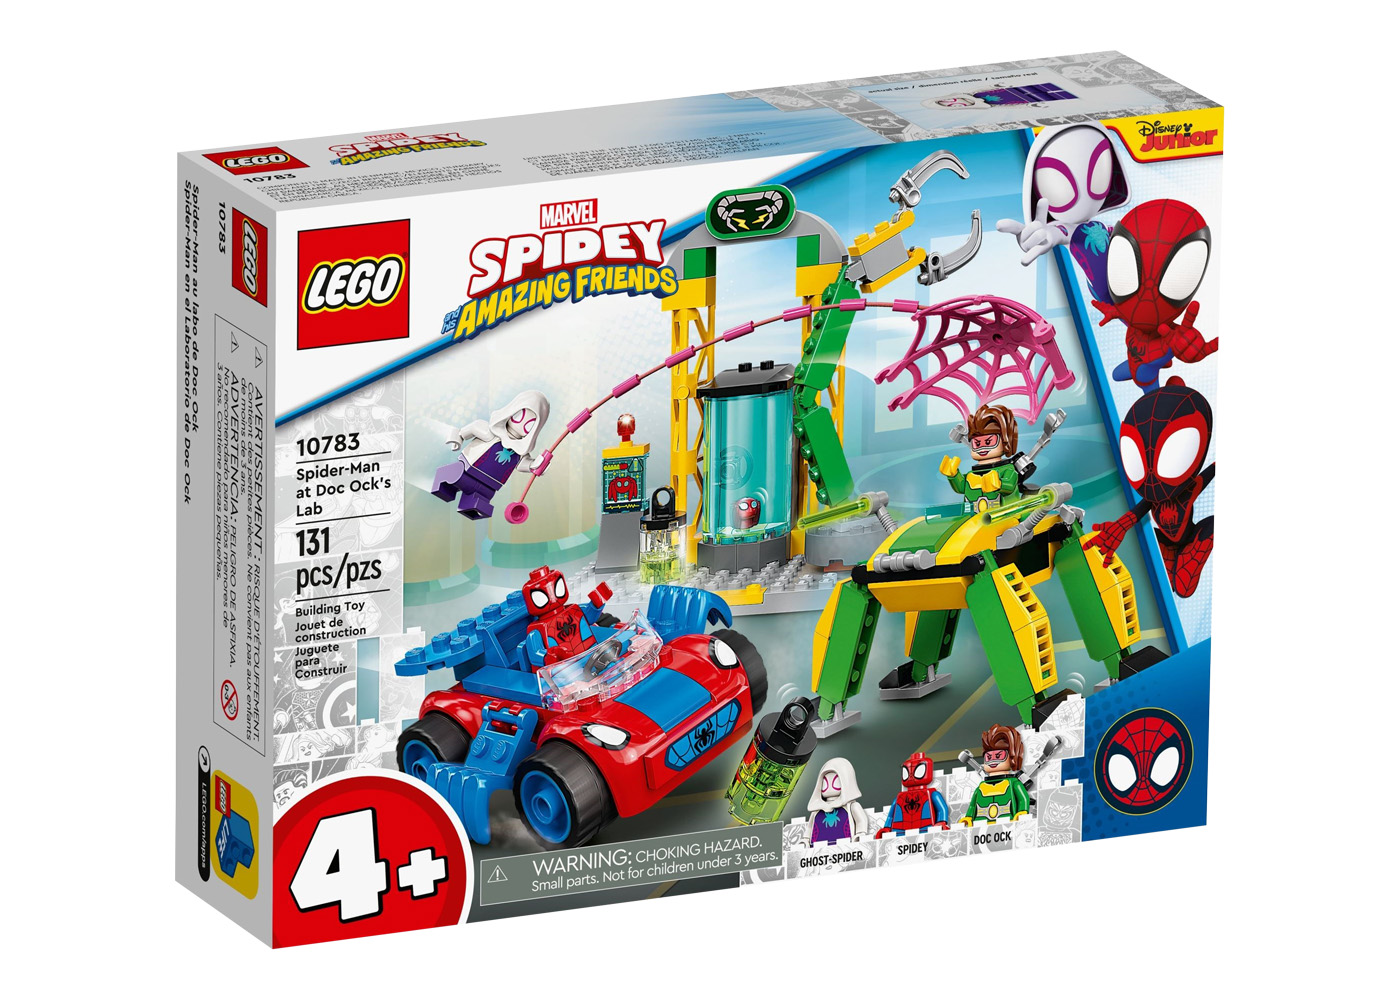 LEGO Marvel Super Heroes Spider-Man at Doc Ock's Lab Set 10783 - US